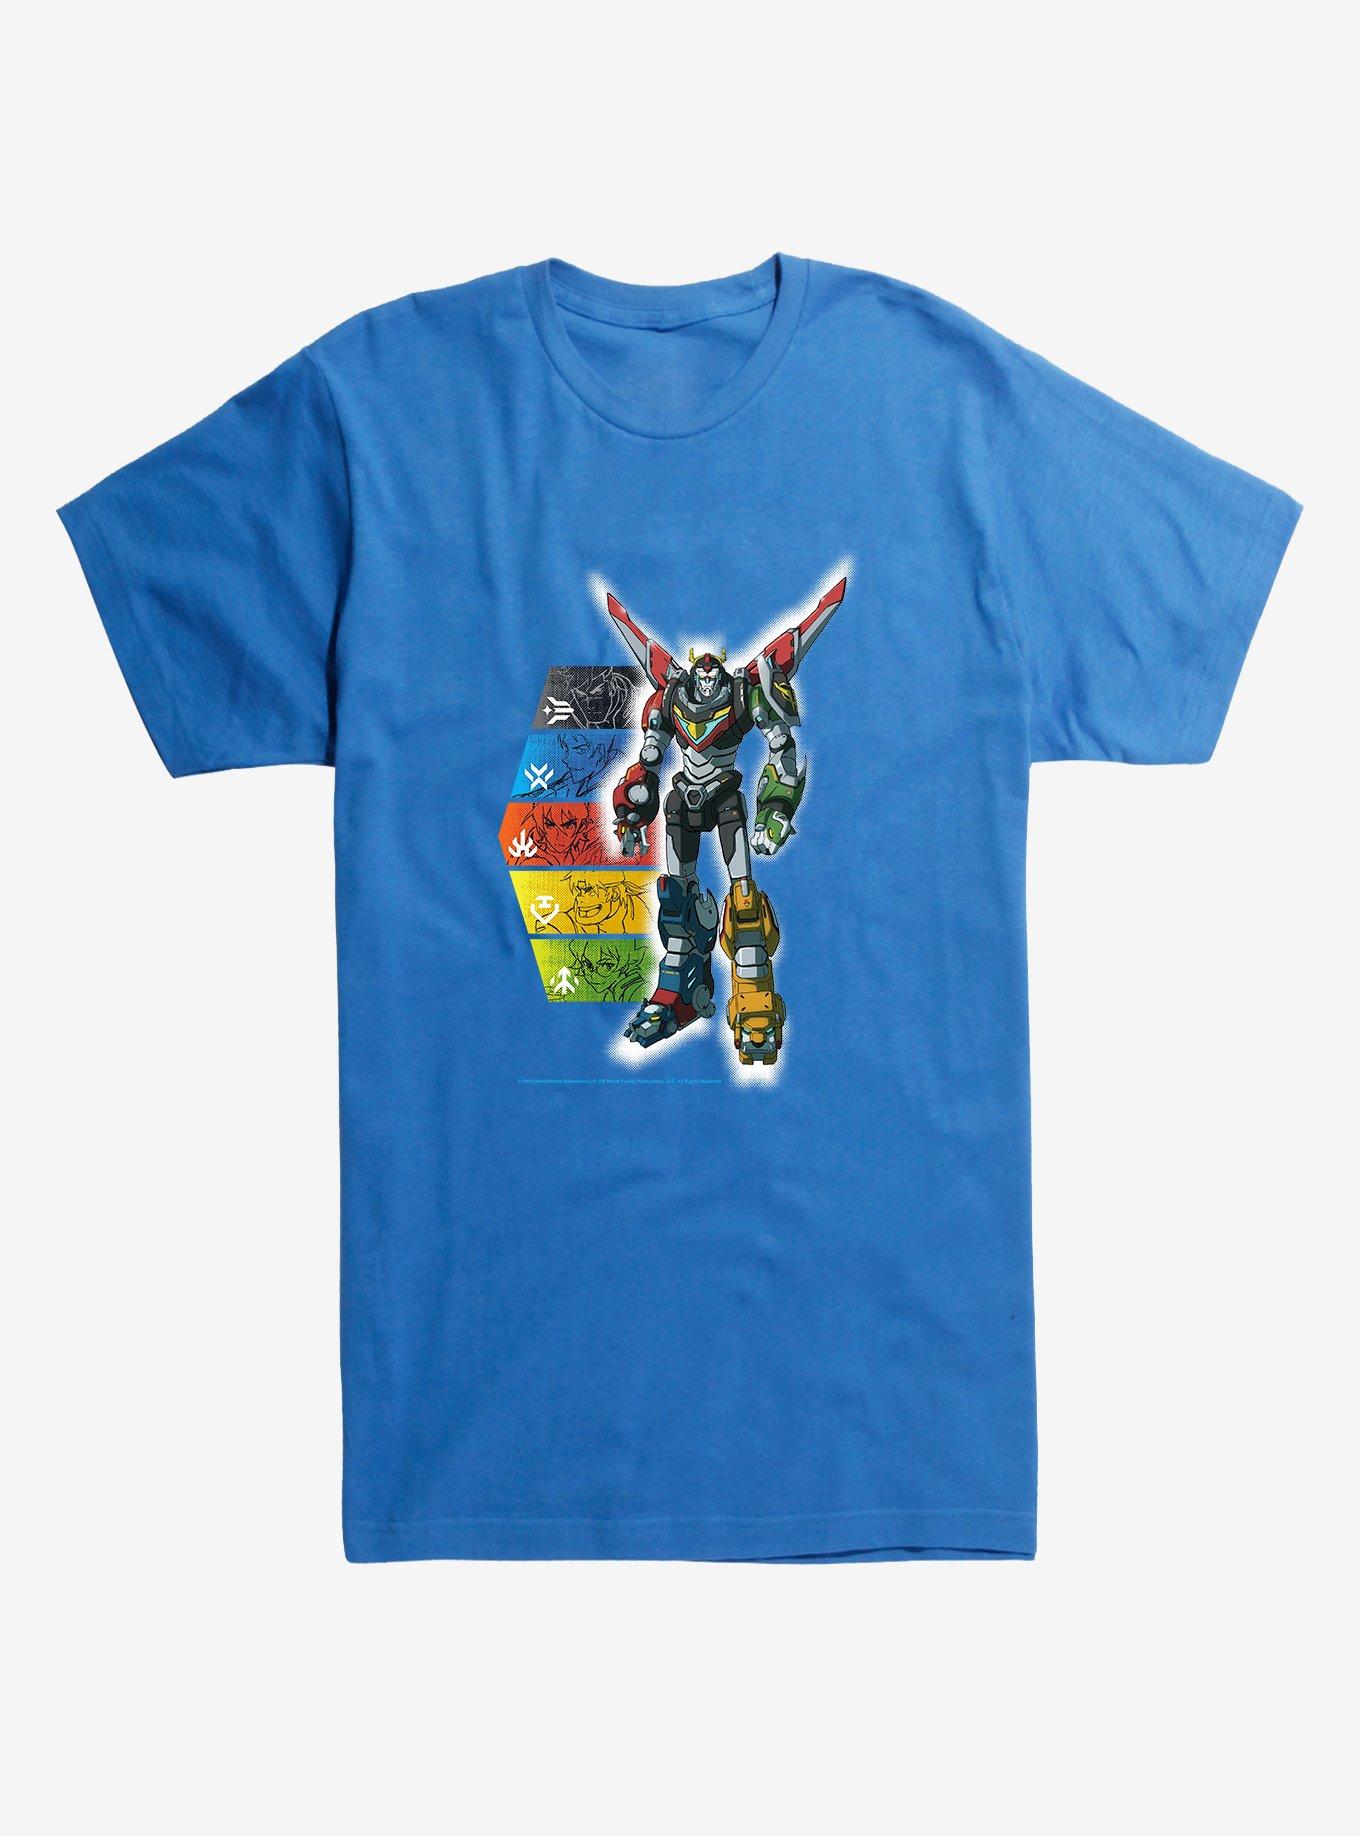 Voltron Super Robot T-Shirt, ROYAL BLUE, hi-res